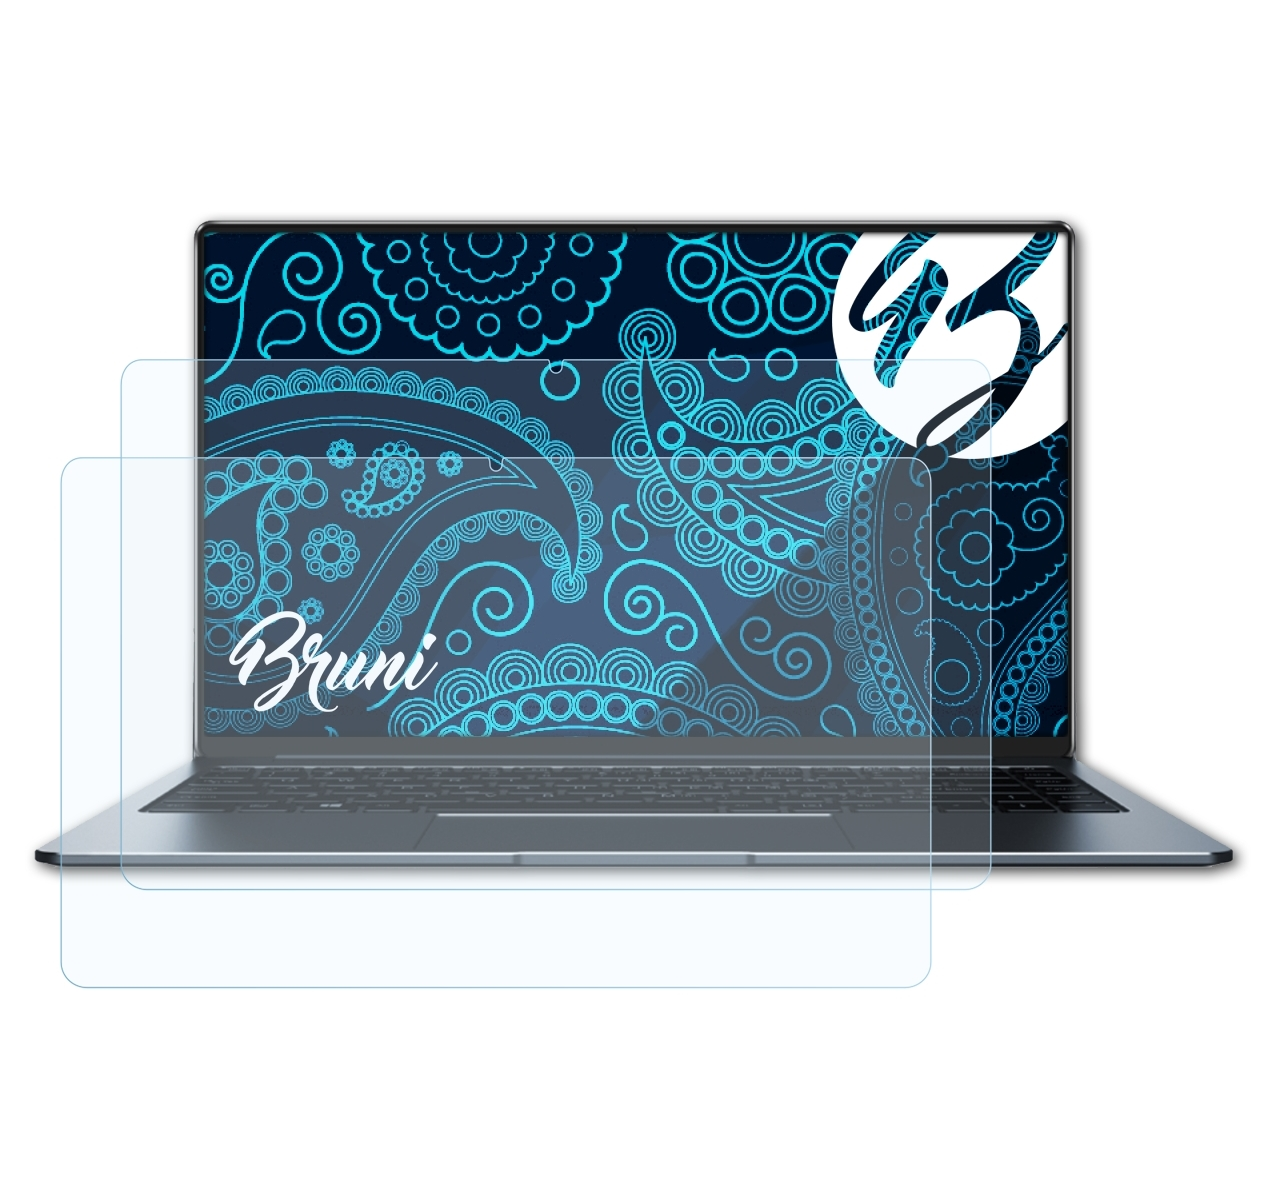 BRUNI 2x Basics-Clear Schutzfolie(für LapBook Pro) Chuwi